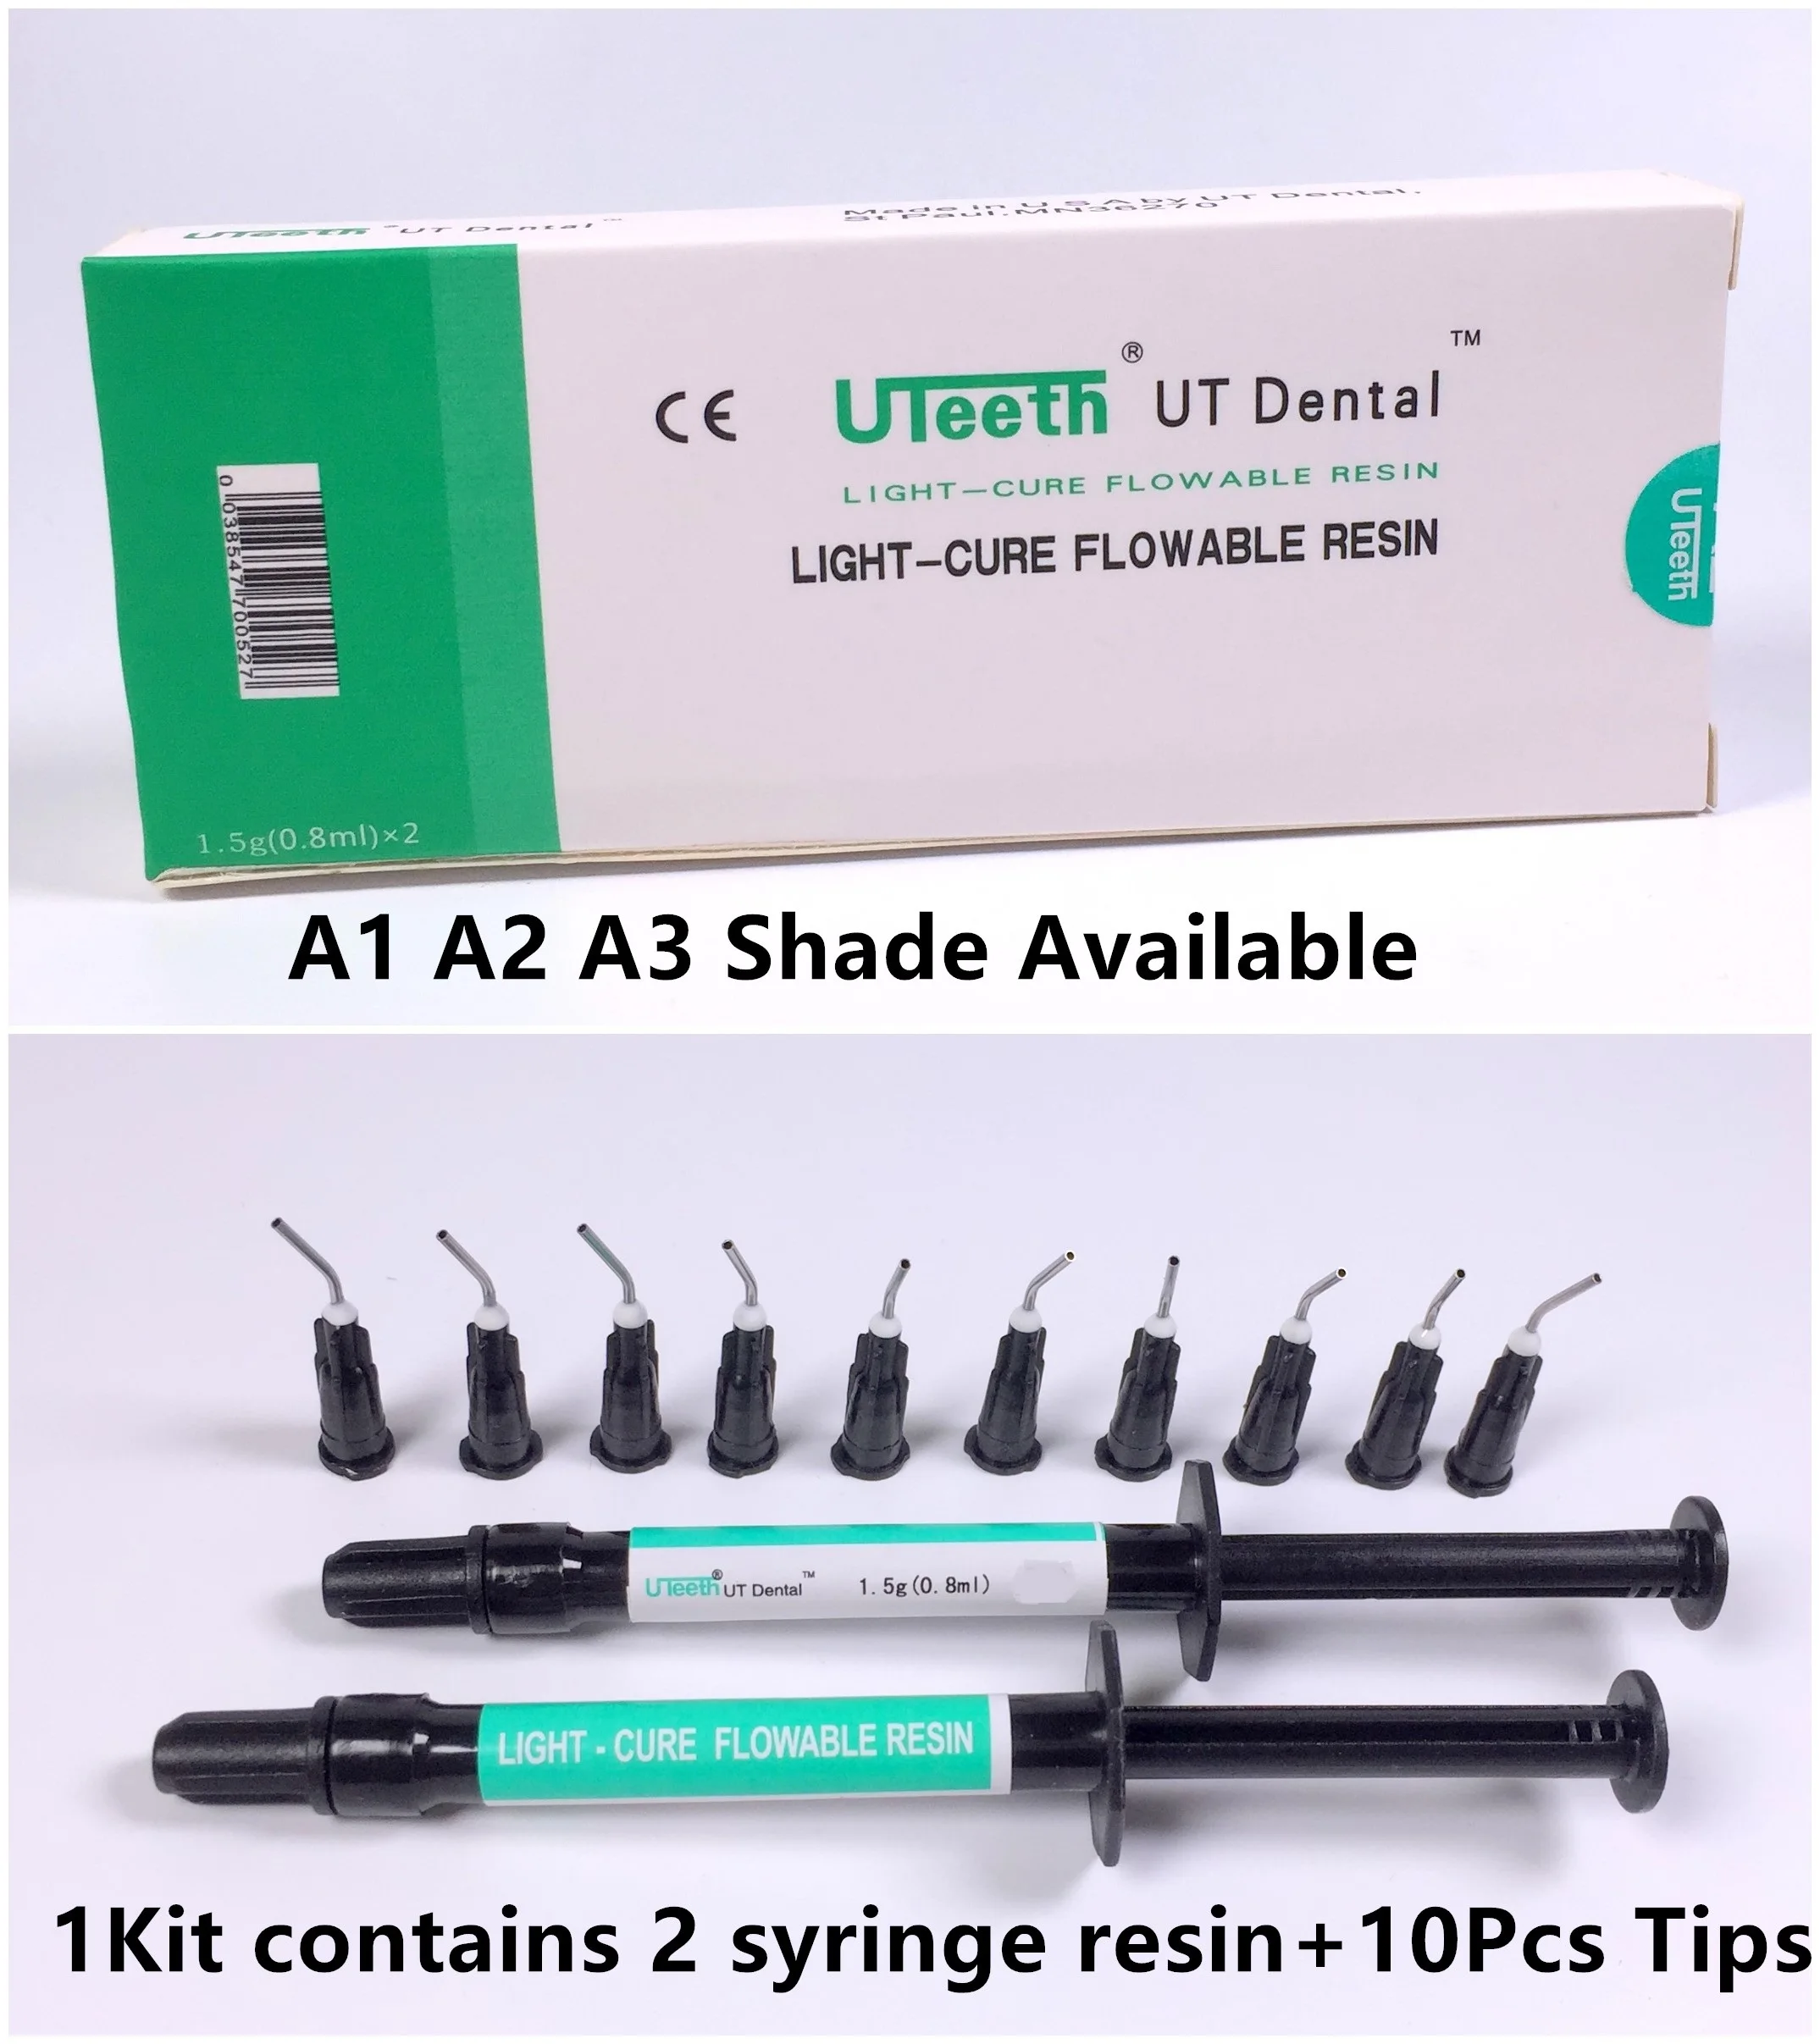 

1 комплект UT Стоматологическая Плавная композитная Смола быстрое лечение 2 шприц A1 A2 A3 цветные насадки для дозирования оттенков материал для наполнения зубов